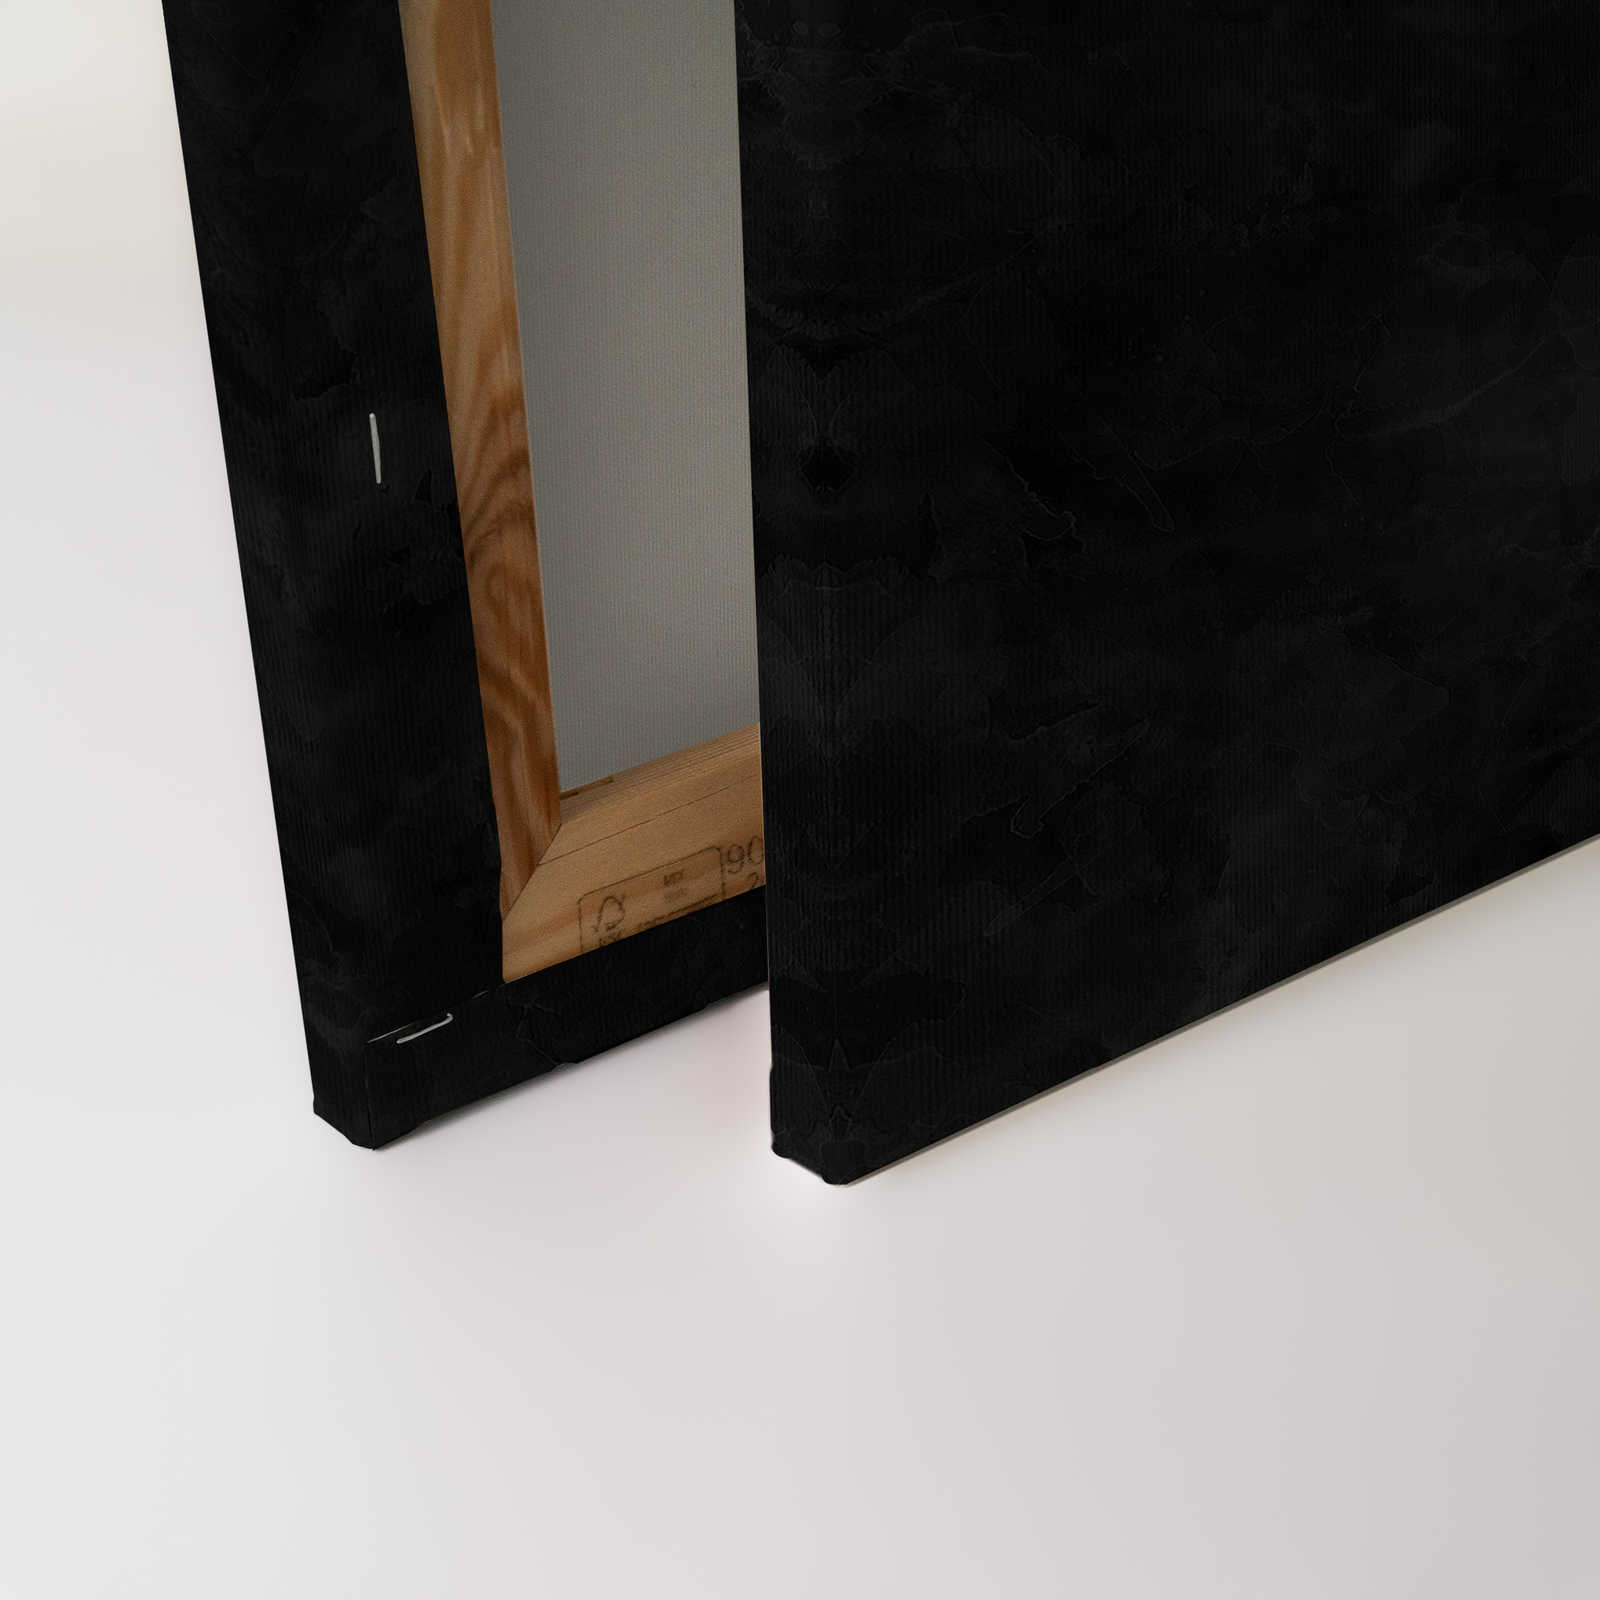             Schwarzes Leinwandbild Kreidetafel Look – 0,90 m x 0,60 m
        